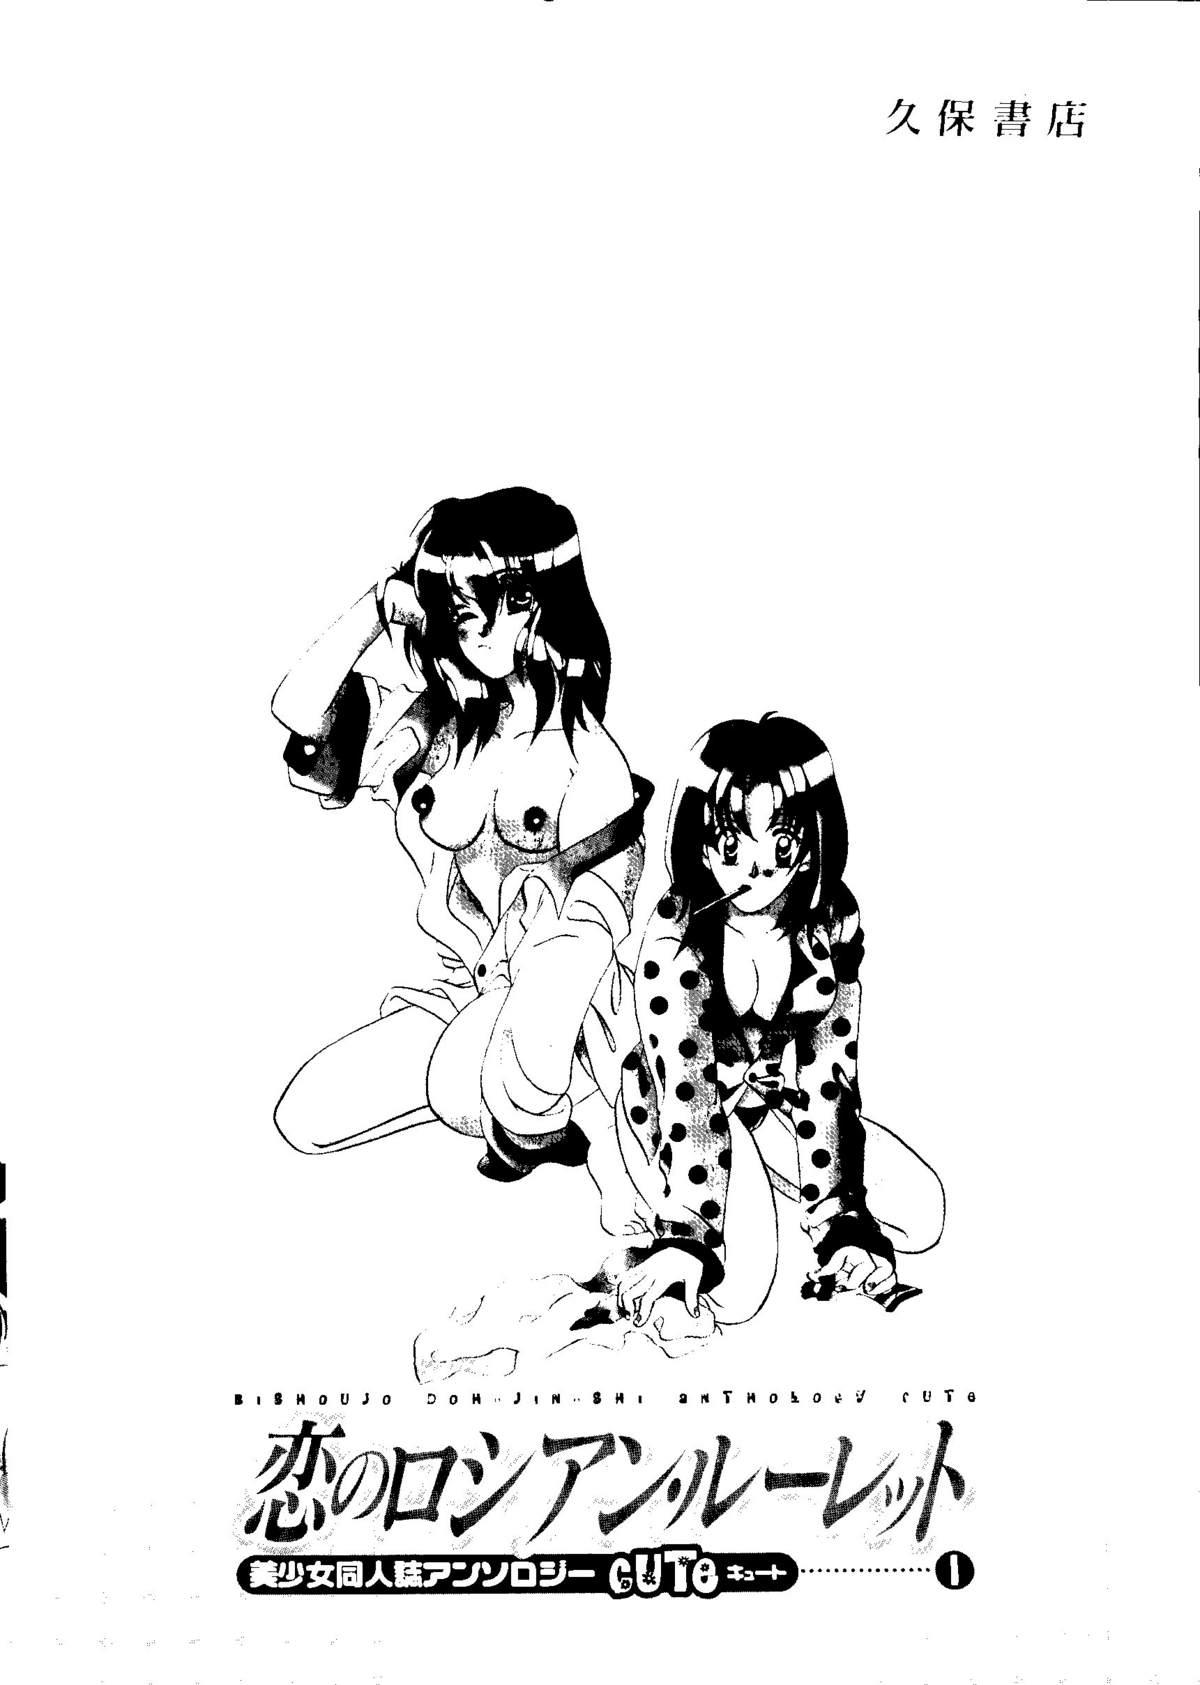 Bishoujo Doujinshi Anthology Cute 1 193